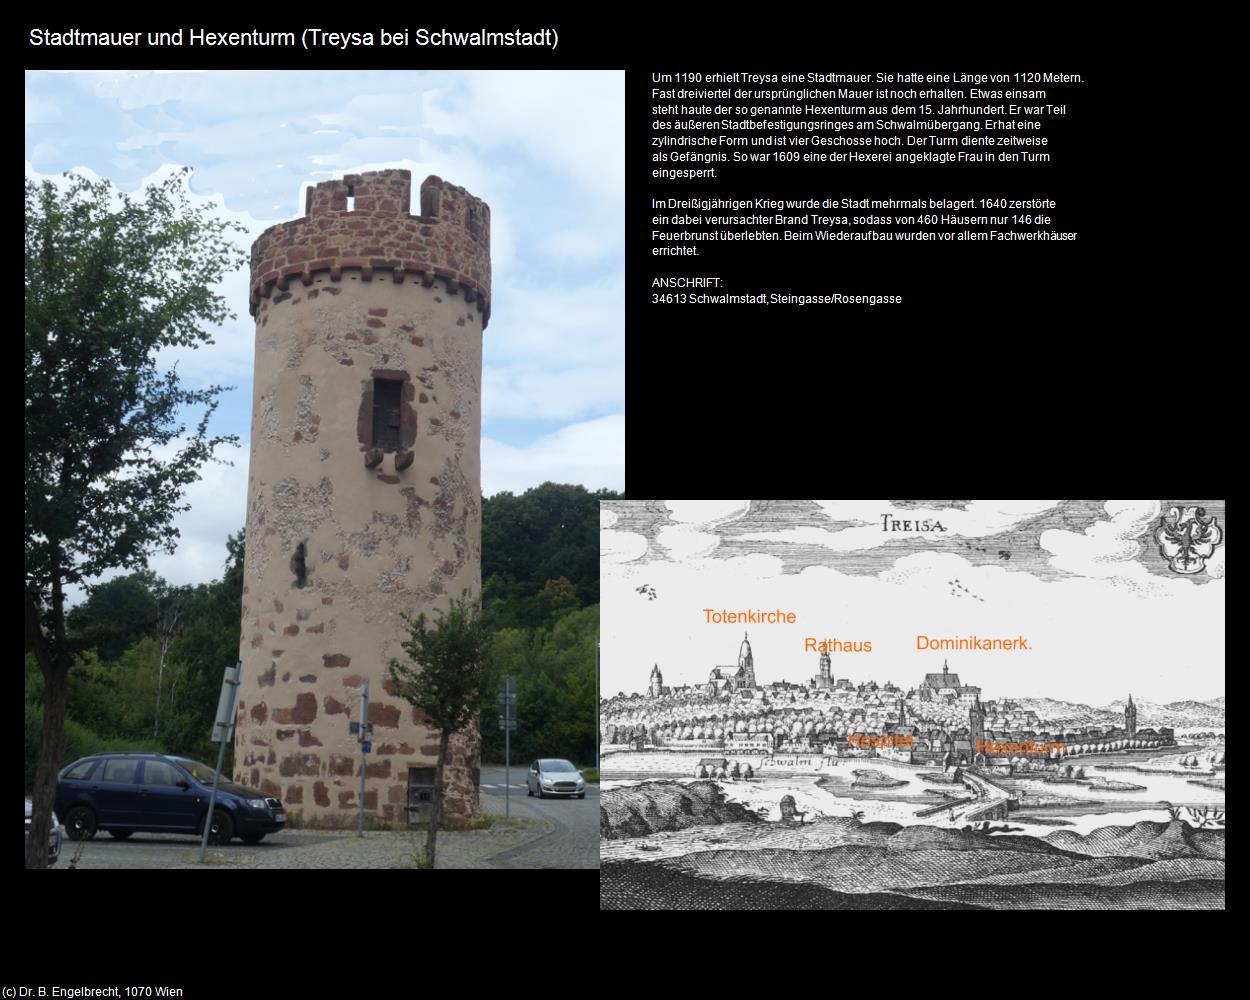 Stadtmauer und Hexenturm (Schwalmstadt) in Kulturatlas-HESSEN